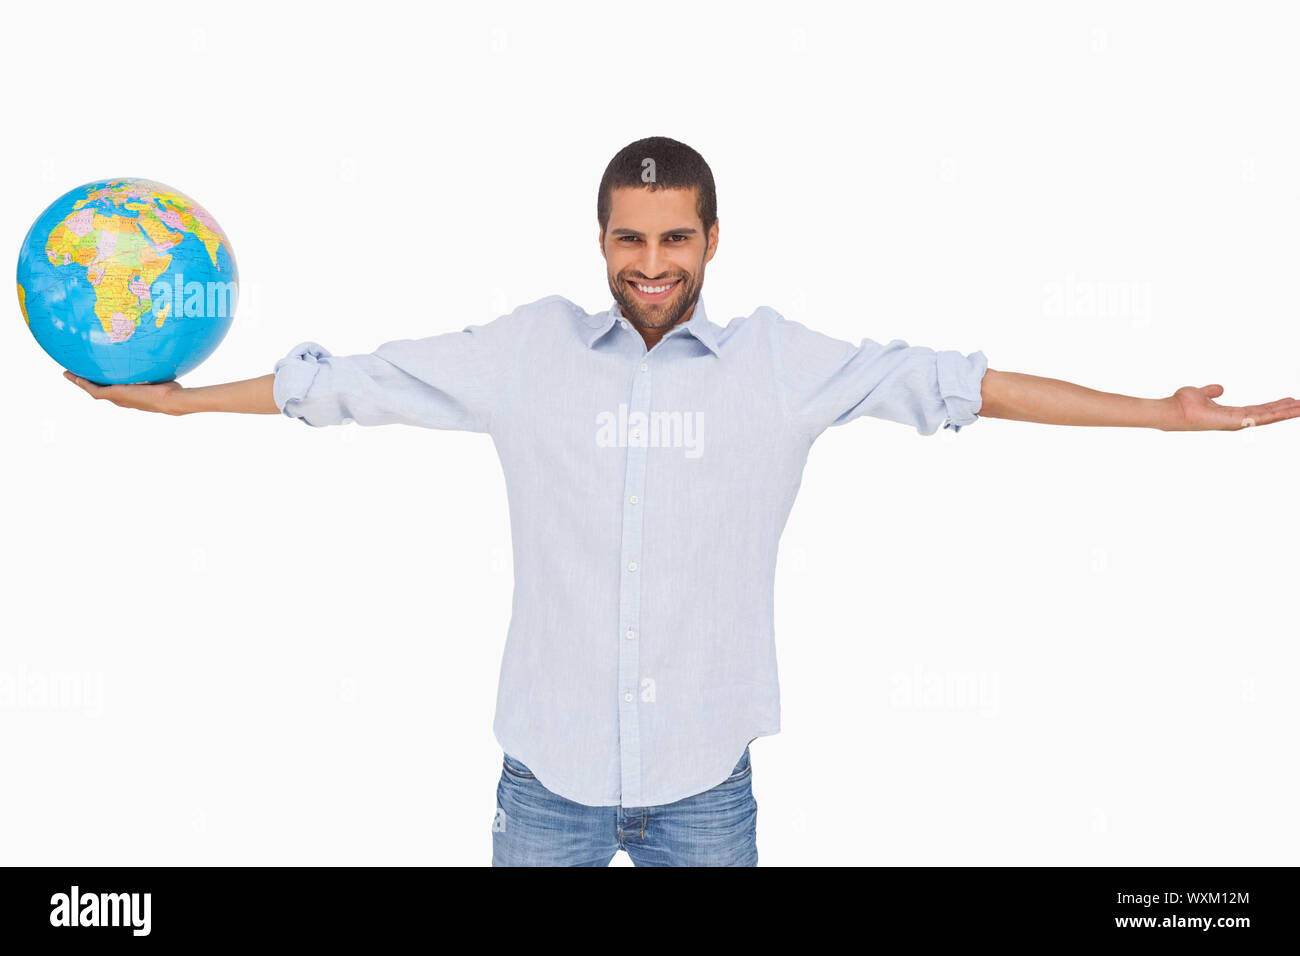 Lächelnder Mann hält einen Globus und anderen Arm ausgestreckt auf weißem Hintergrund Stockfoto